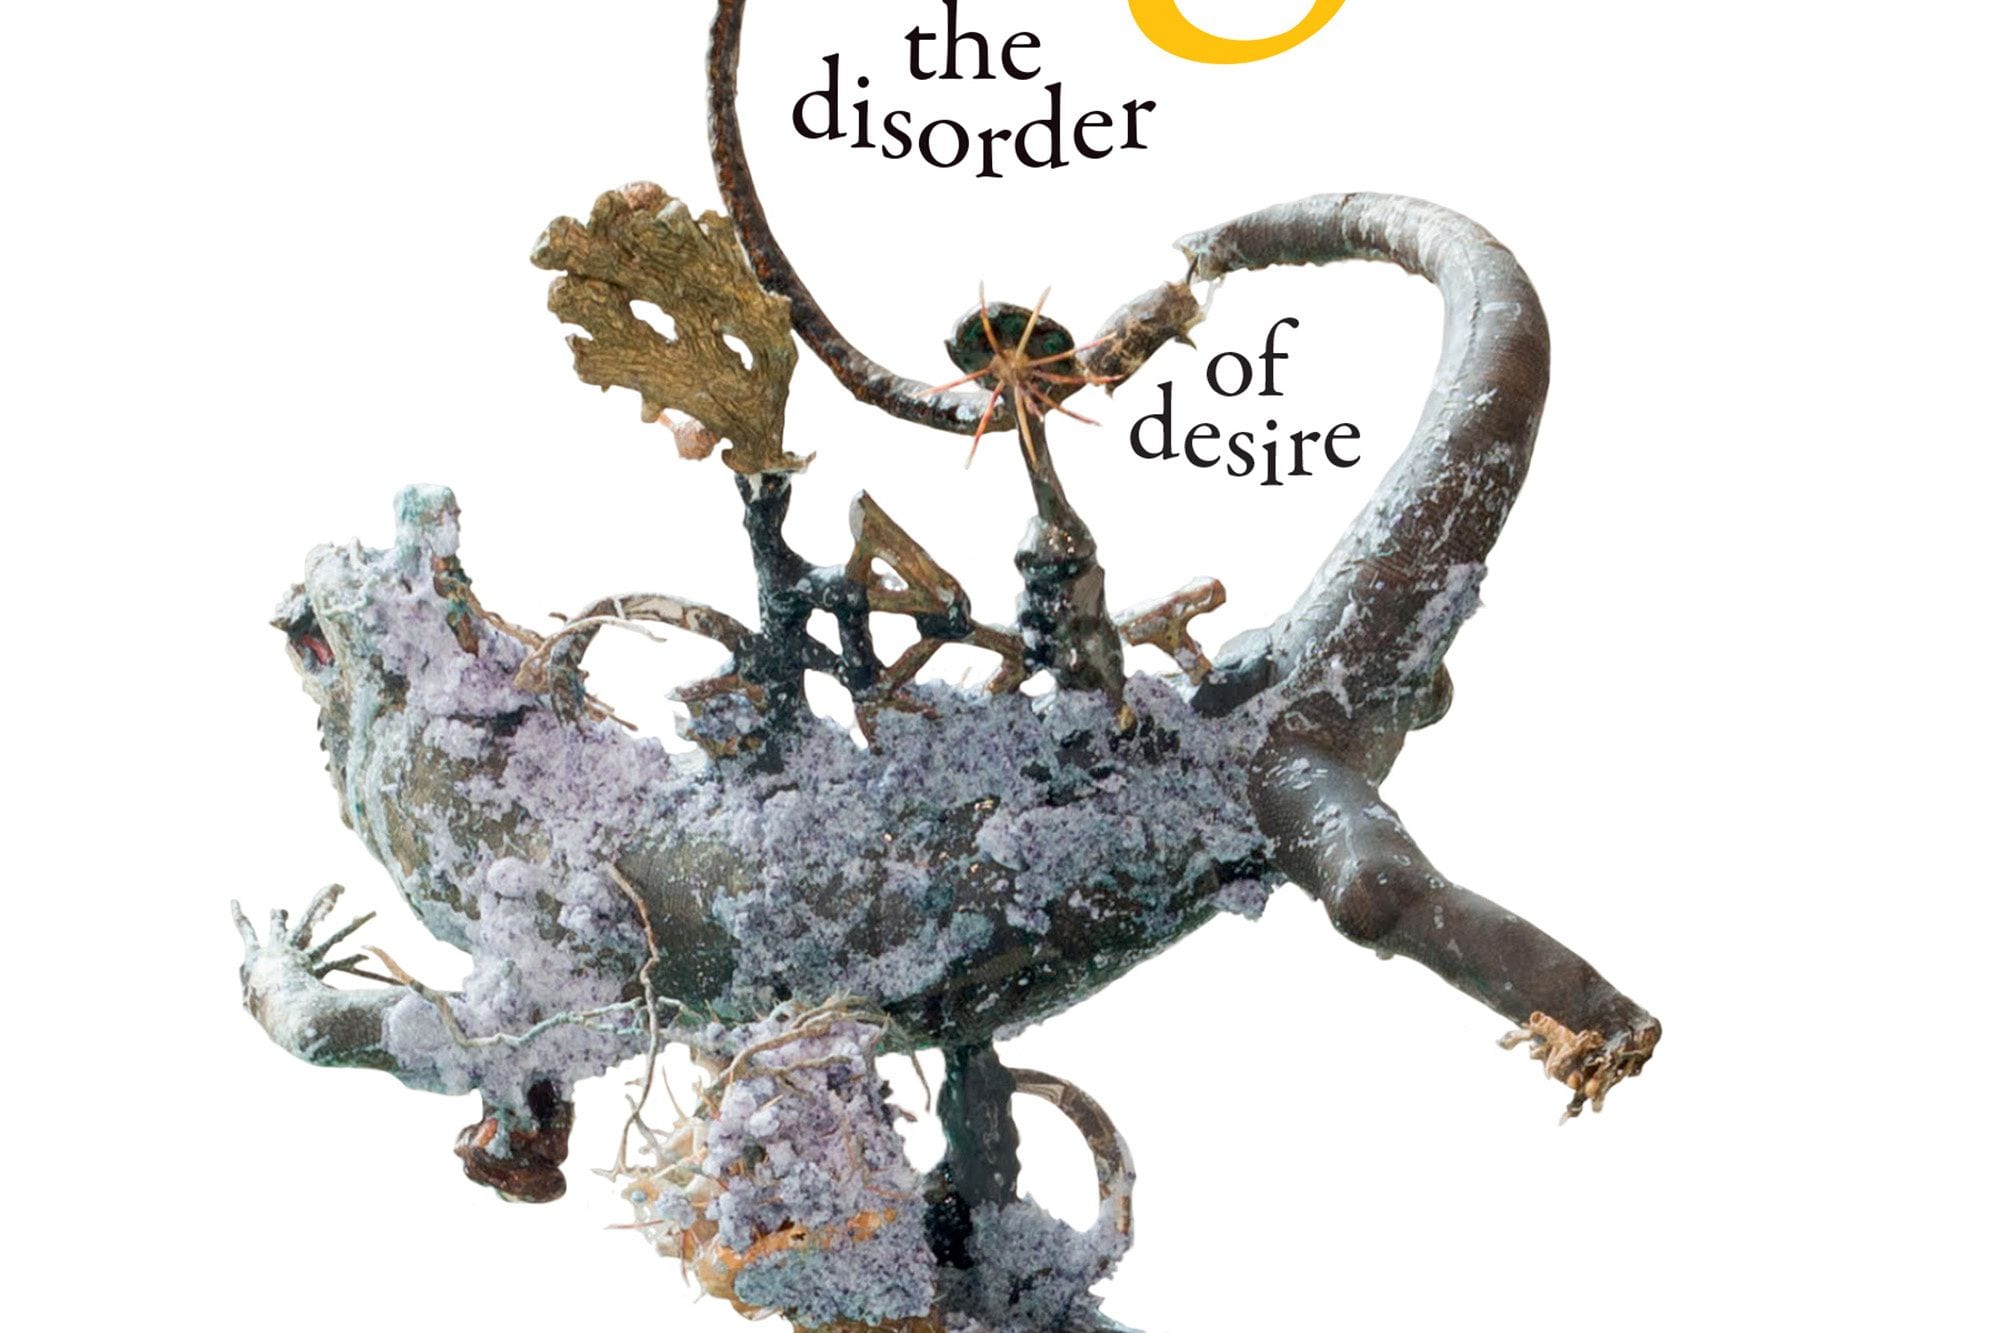 Jack Halberstam’s ‘Wild Things: The Disorder of Desire’ (excerpt)